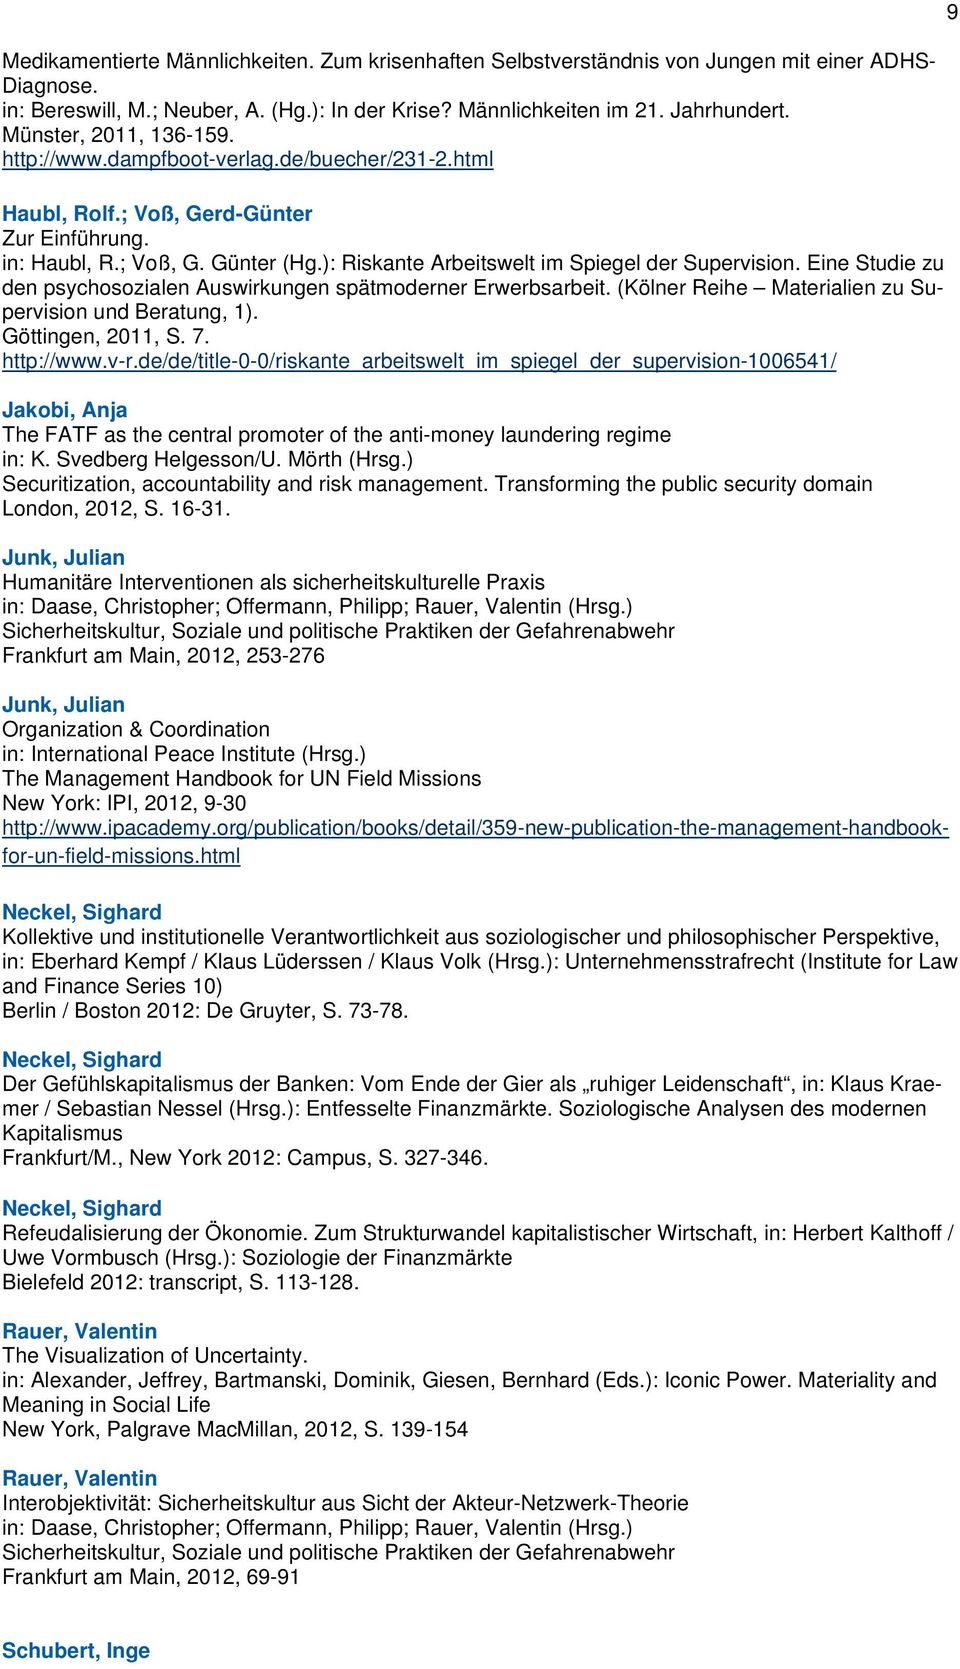 Eine Studie zu den psychosozialen Auswirkungen spätmoderner Erwerbsarbeit. (Kölner Reihe Materialien zu Supervision und Beratung, 1). Göttingen, 2011, S. 7. http://www.v-r.